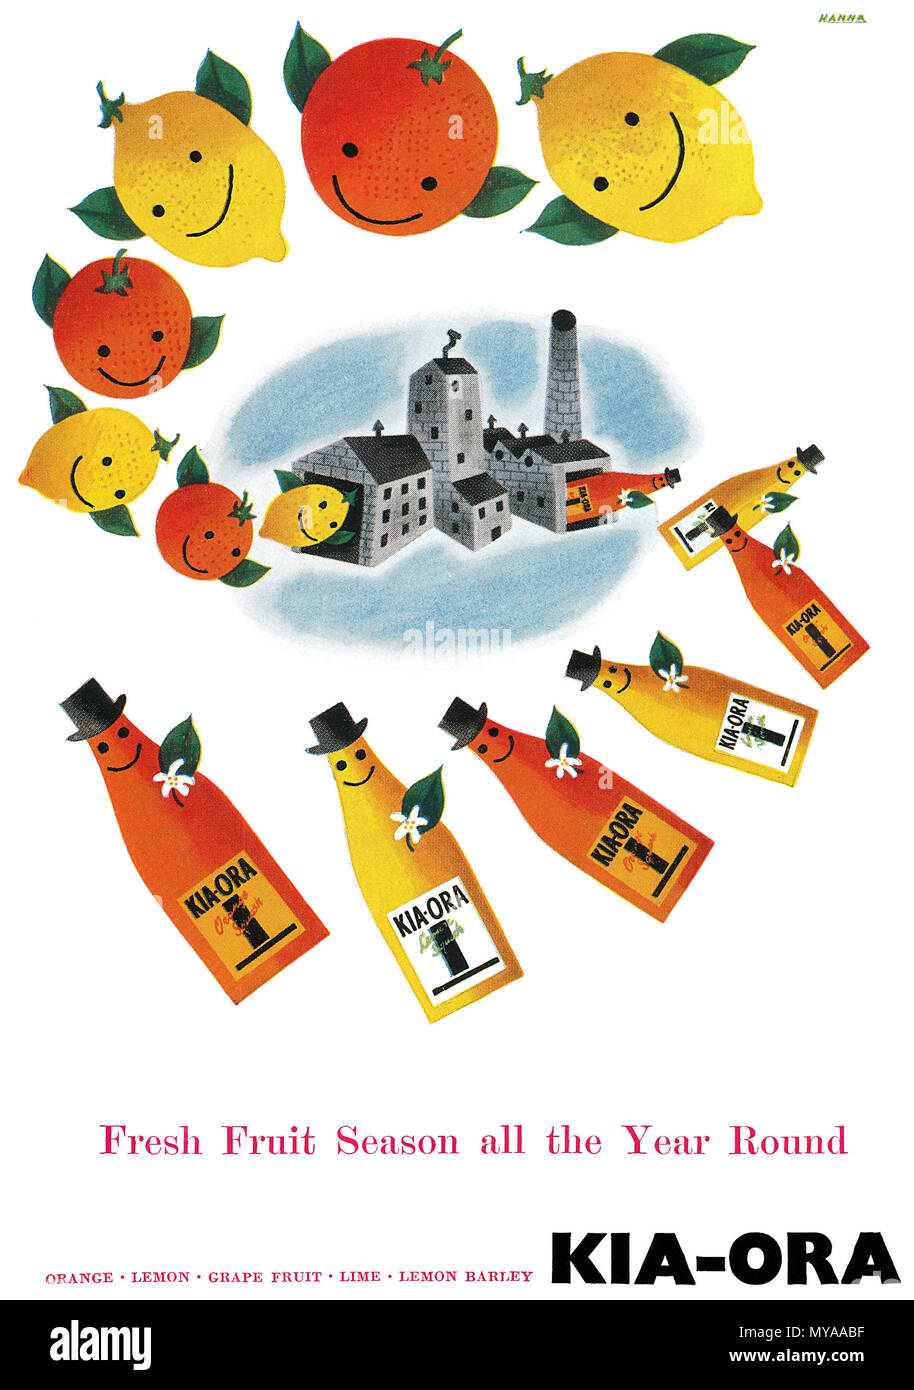 1950 britischen Werbung für kia-ora Obst Kürbisse. Stockfoto